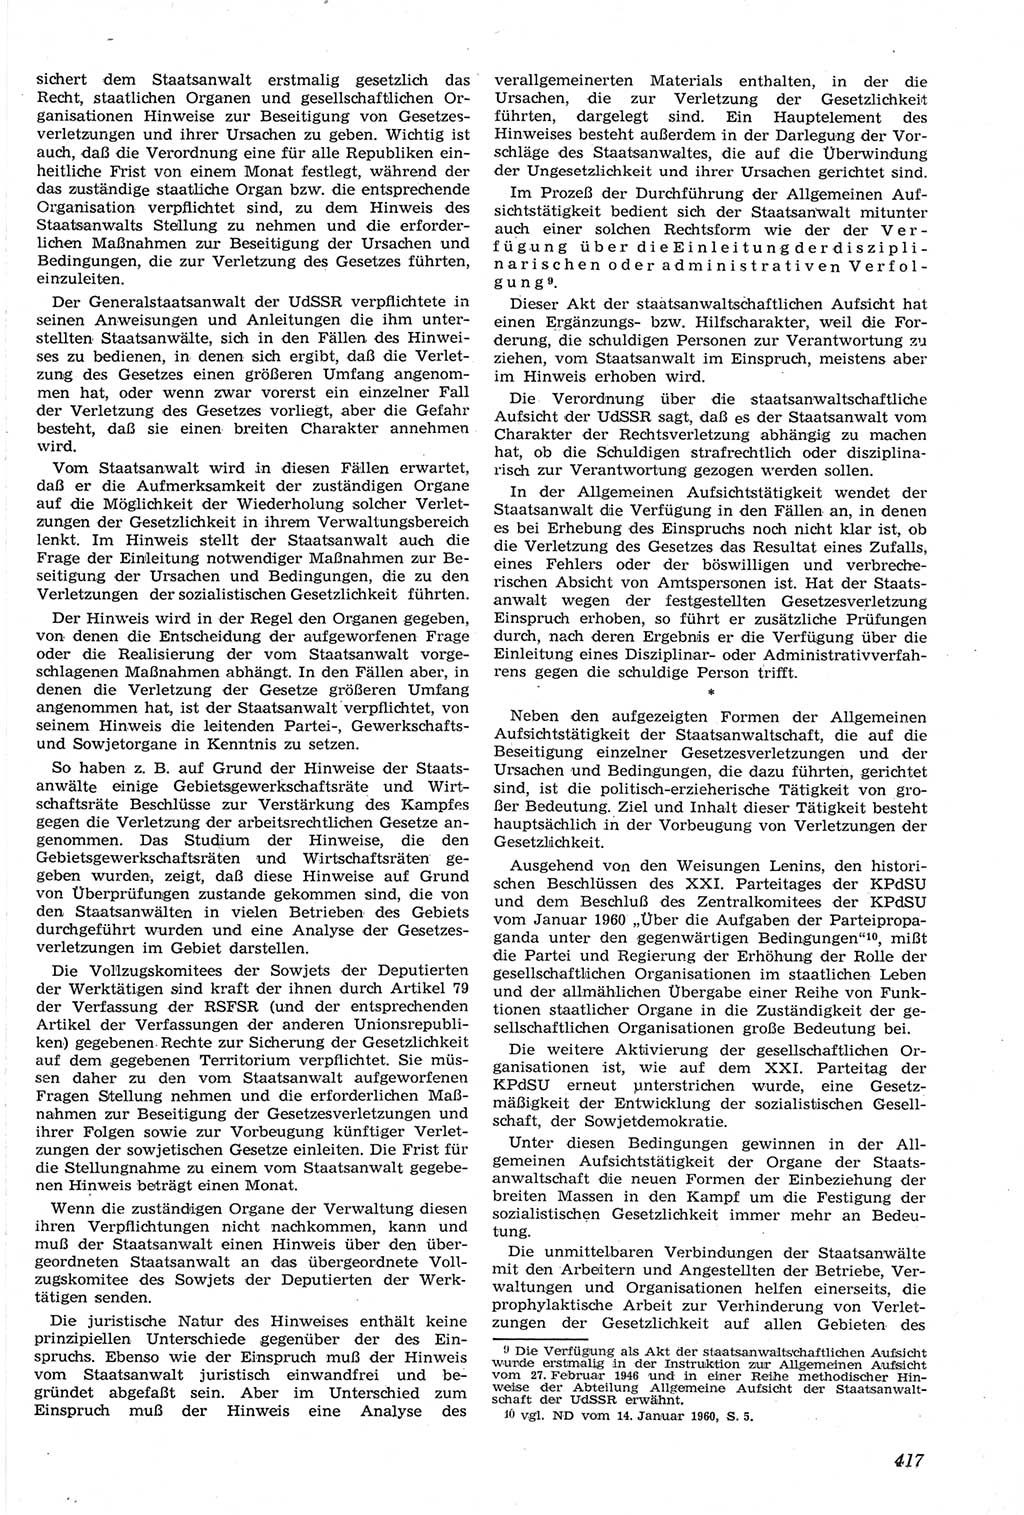 Neue Justiz (NJ), Zeitschrift für Recht und Rechtswissenschaft [Deutsche Demokratische Republik (DDR)], 14. Jahrgang 1960, Seite 417 (NJ DDR 1960, S. 417)